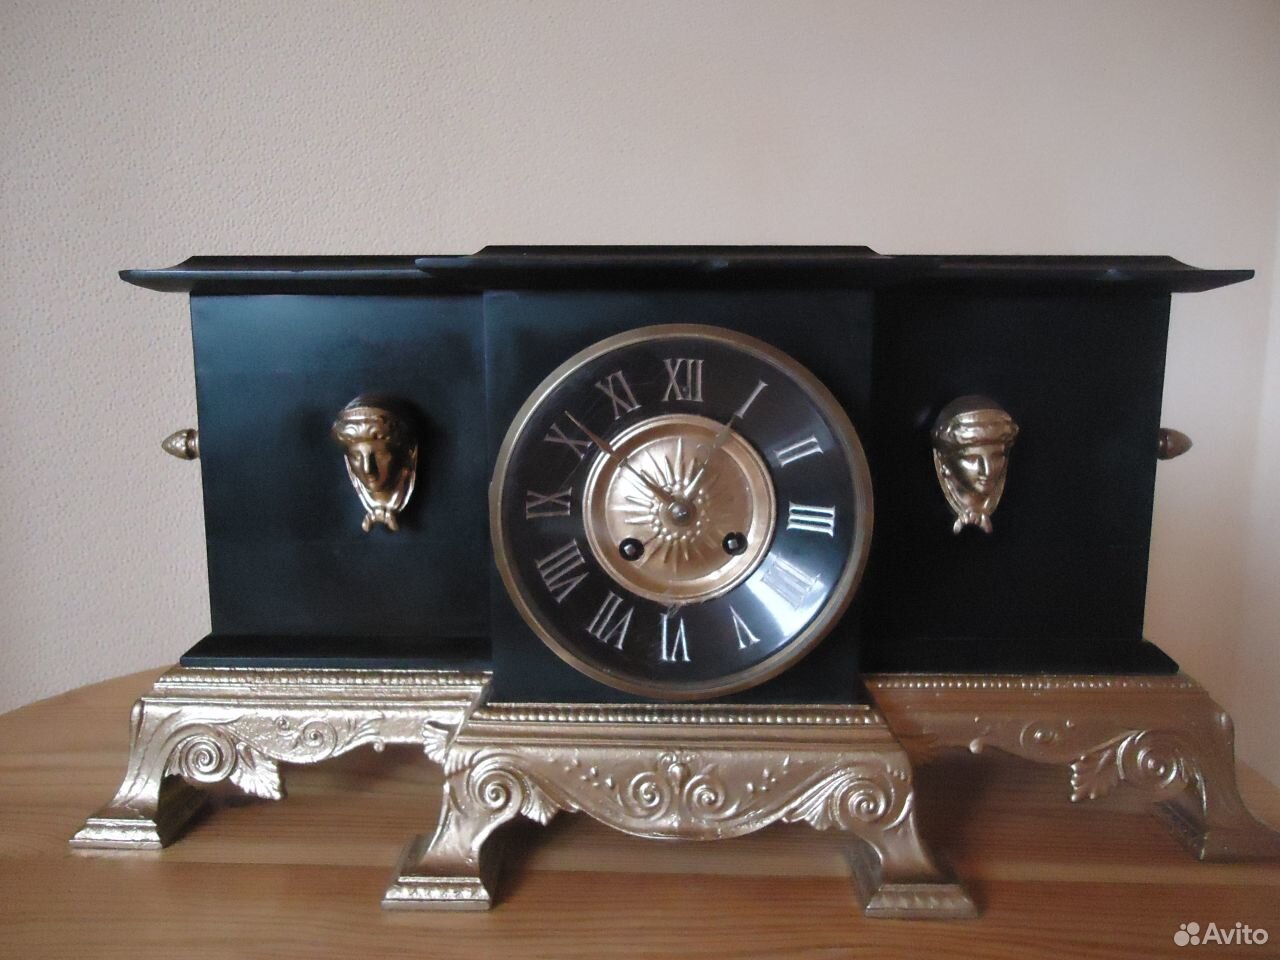 Кемерово авито часы. Japy freres часы каминные. Japy freres Cie часы каминные с боем. Часы каминные 19 век мрамор. Часы каминные 16 -19 век.